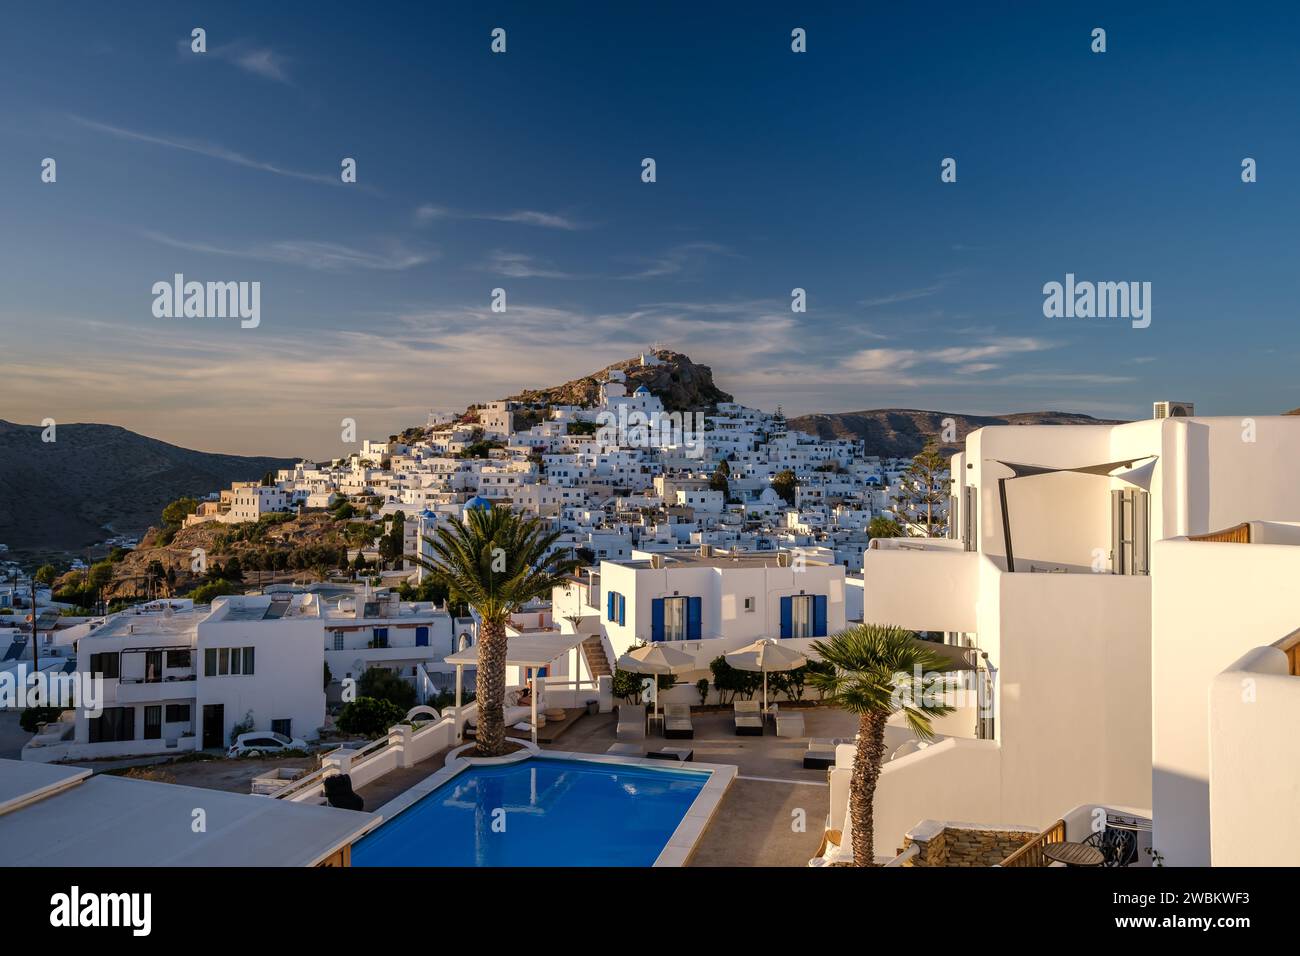 IOS, Griechenland - 14. September 2023 : Blick auf ein malerisches Hotel mit Swimmingpool und das weiß getünchte Dorf iOS Griechenland im Hintergrund Stockfoto